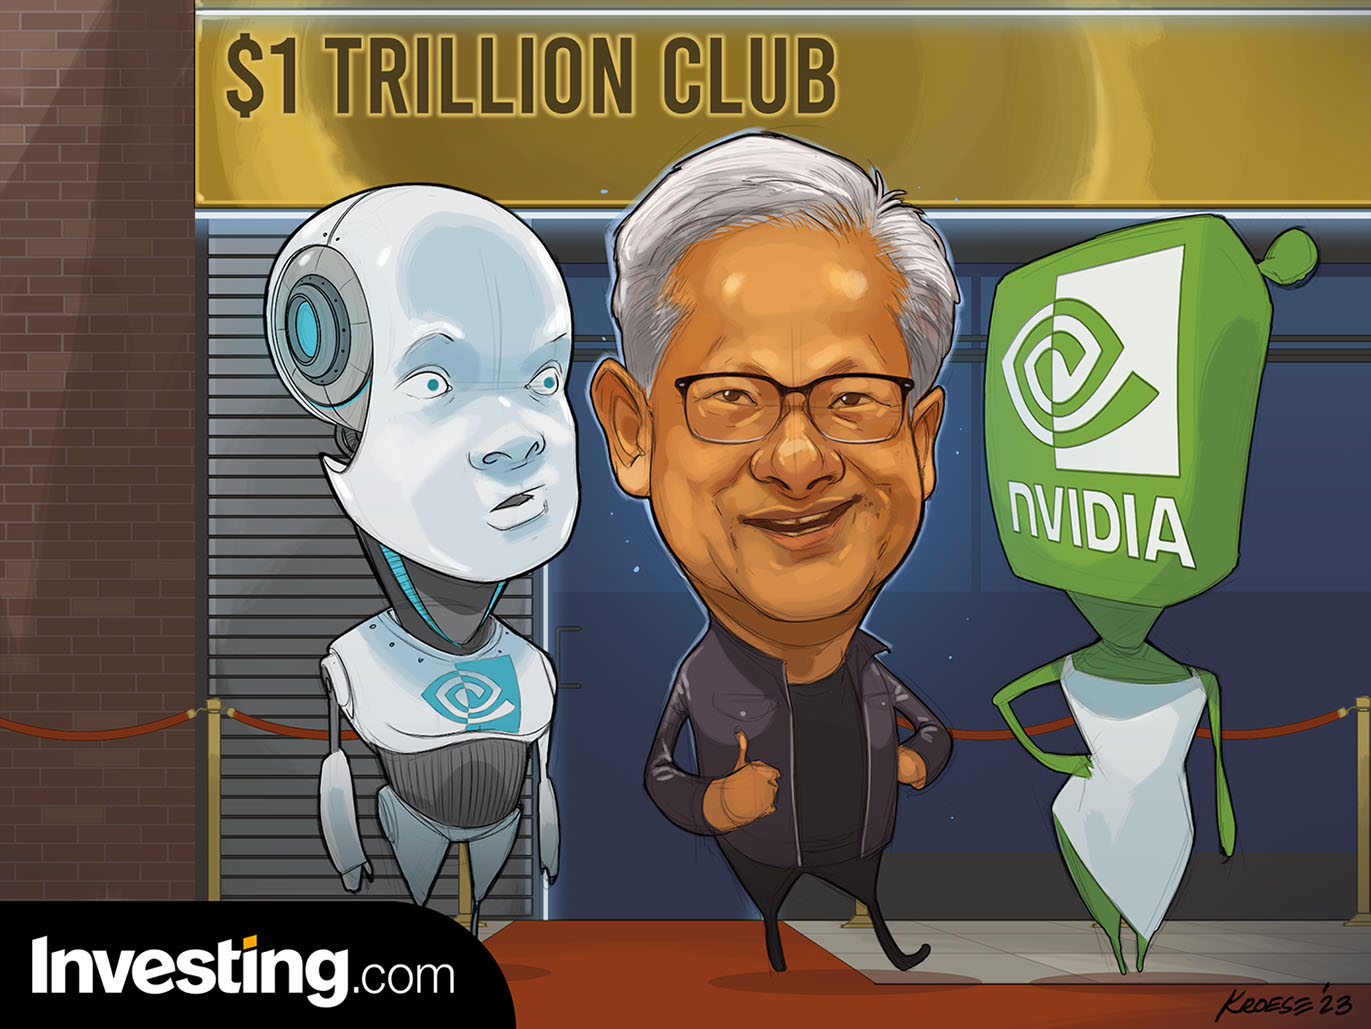 Nvidia se une al exclusivo club del billón de dólares. ¿Qué empresa será la siguiente?